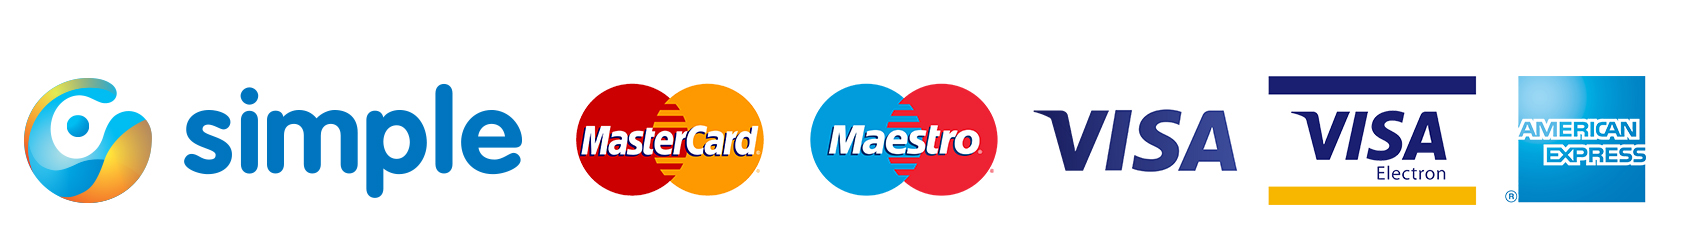 Simple bankcard logos right.jpg